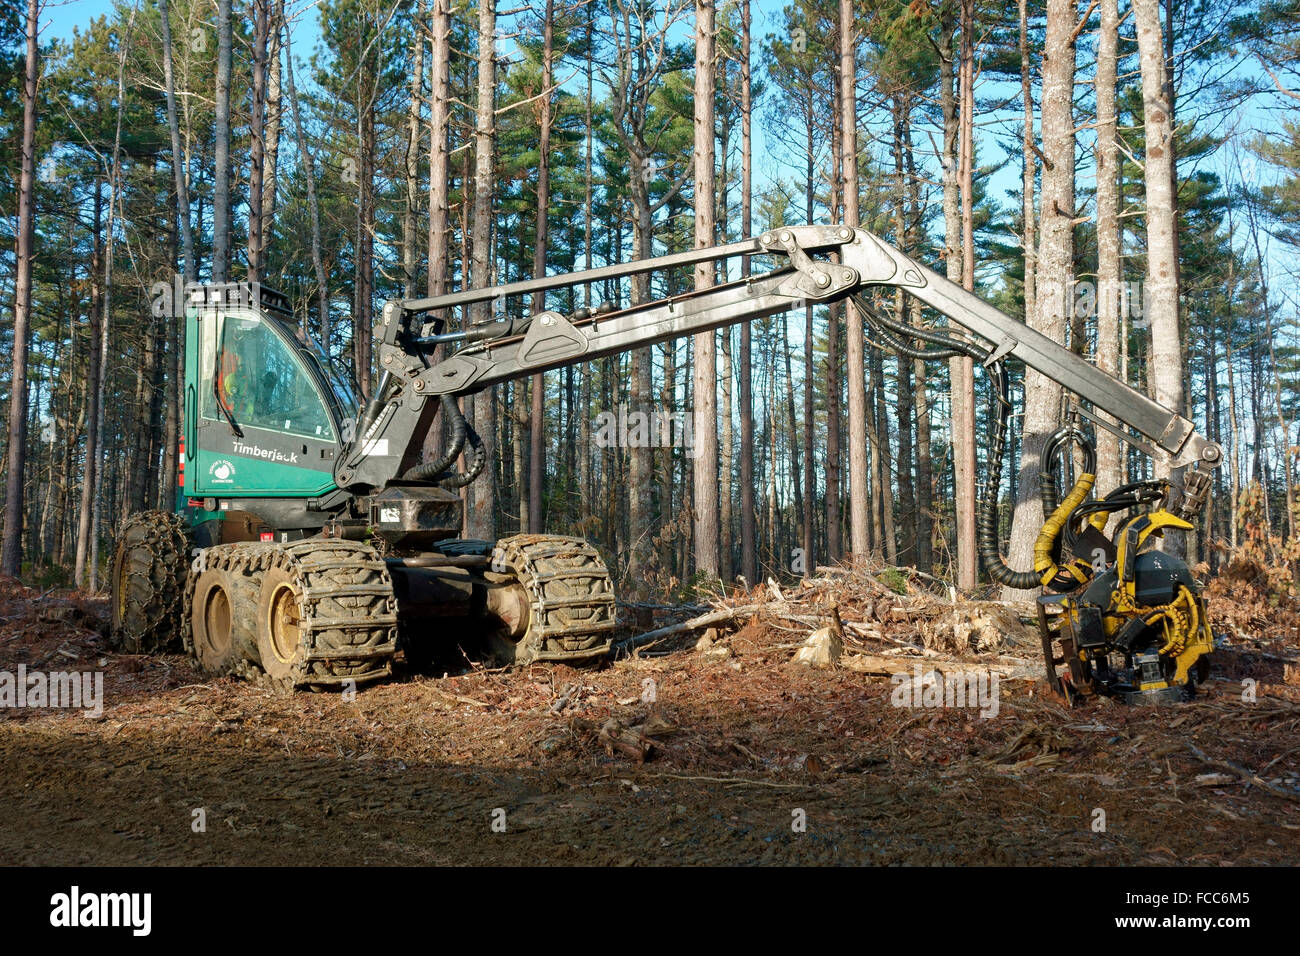 Arbre généalogique Timberjack harvester machine Banque D'Images